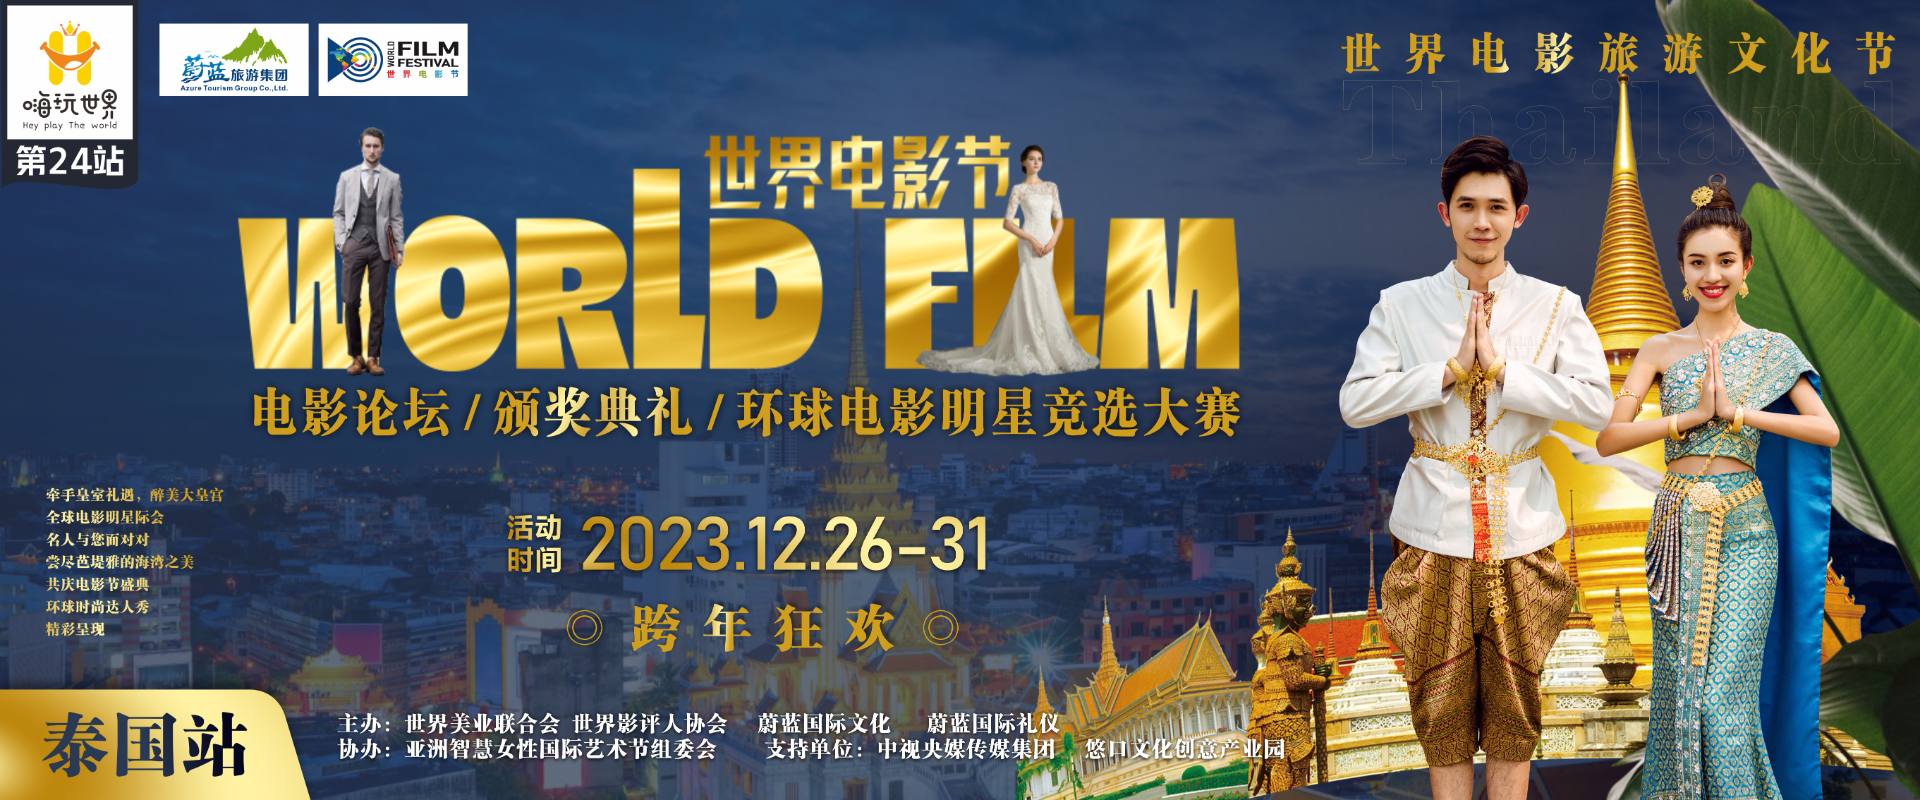 2023年12月26日-31日世界电影节泰国站取得圆满成功